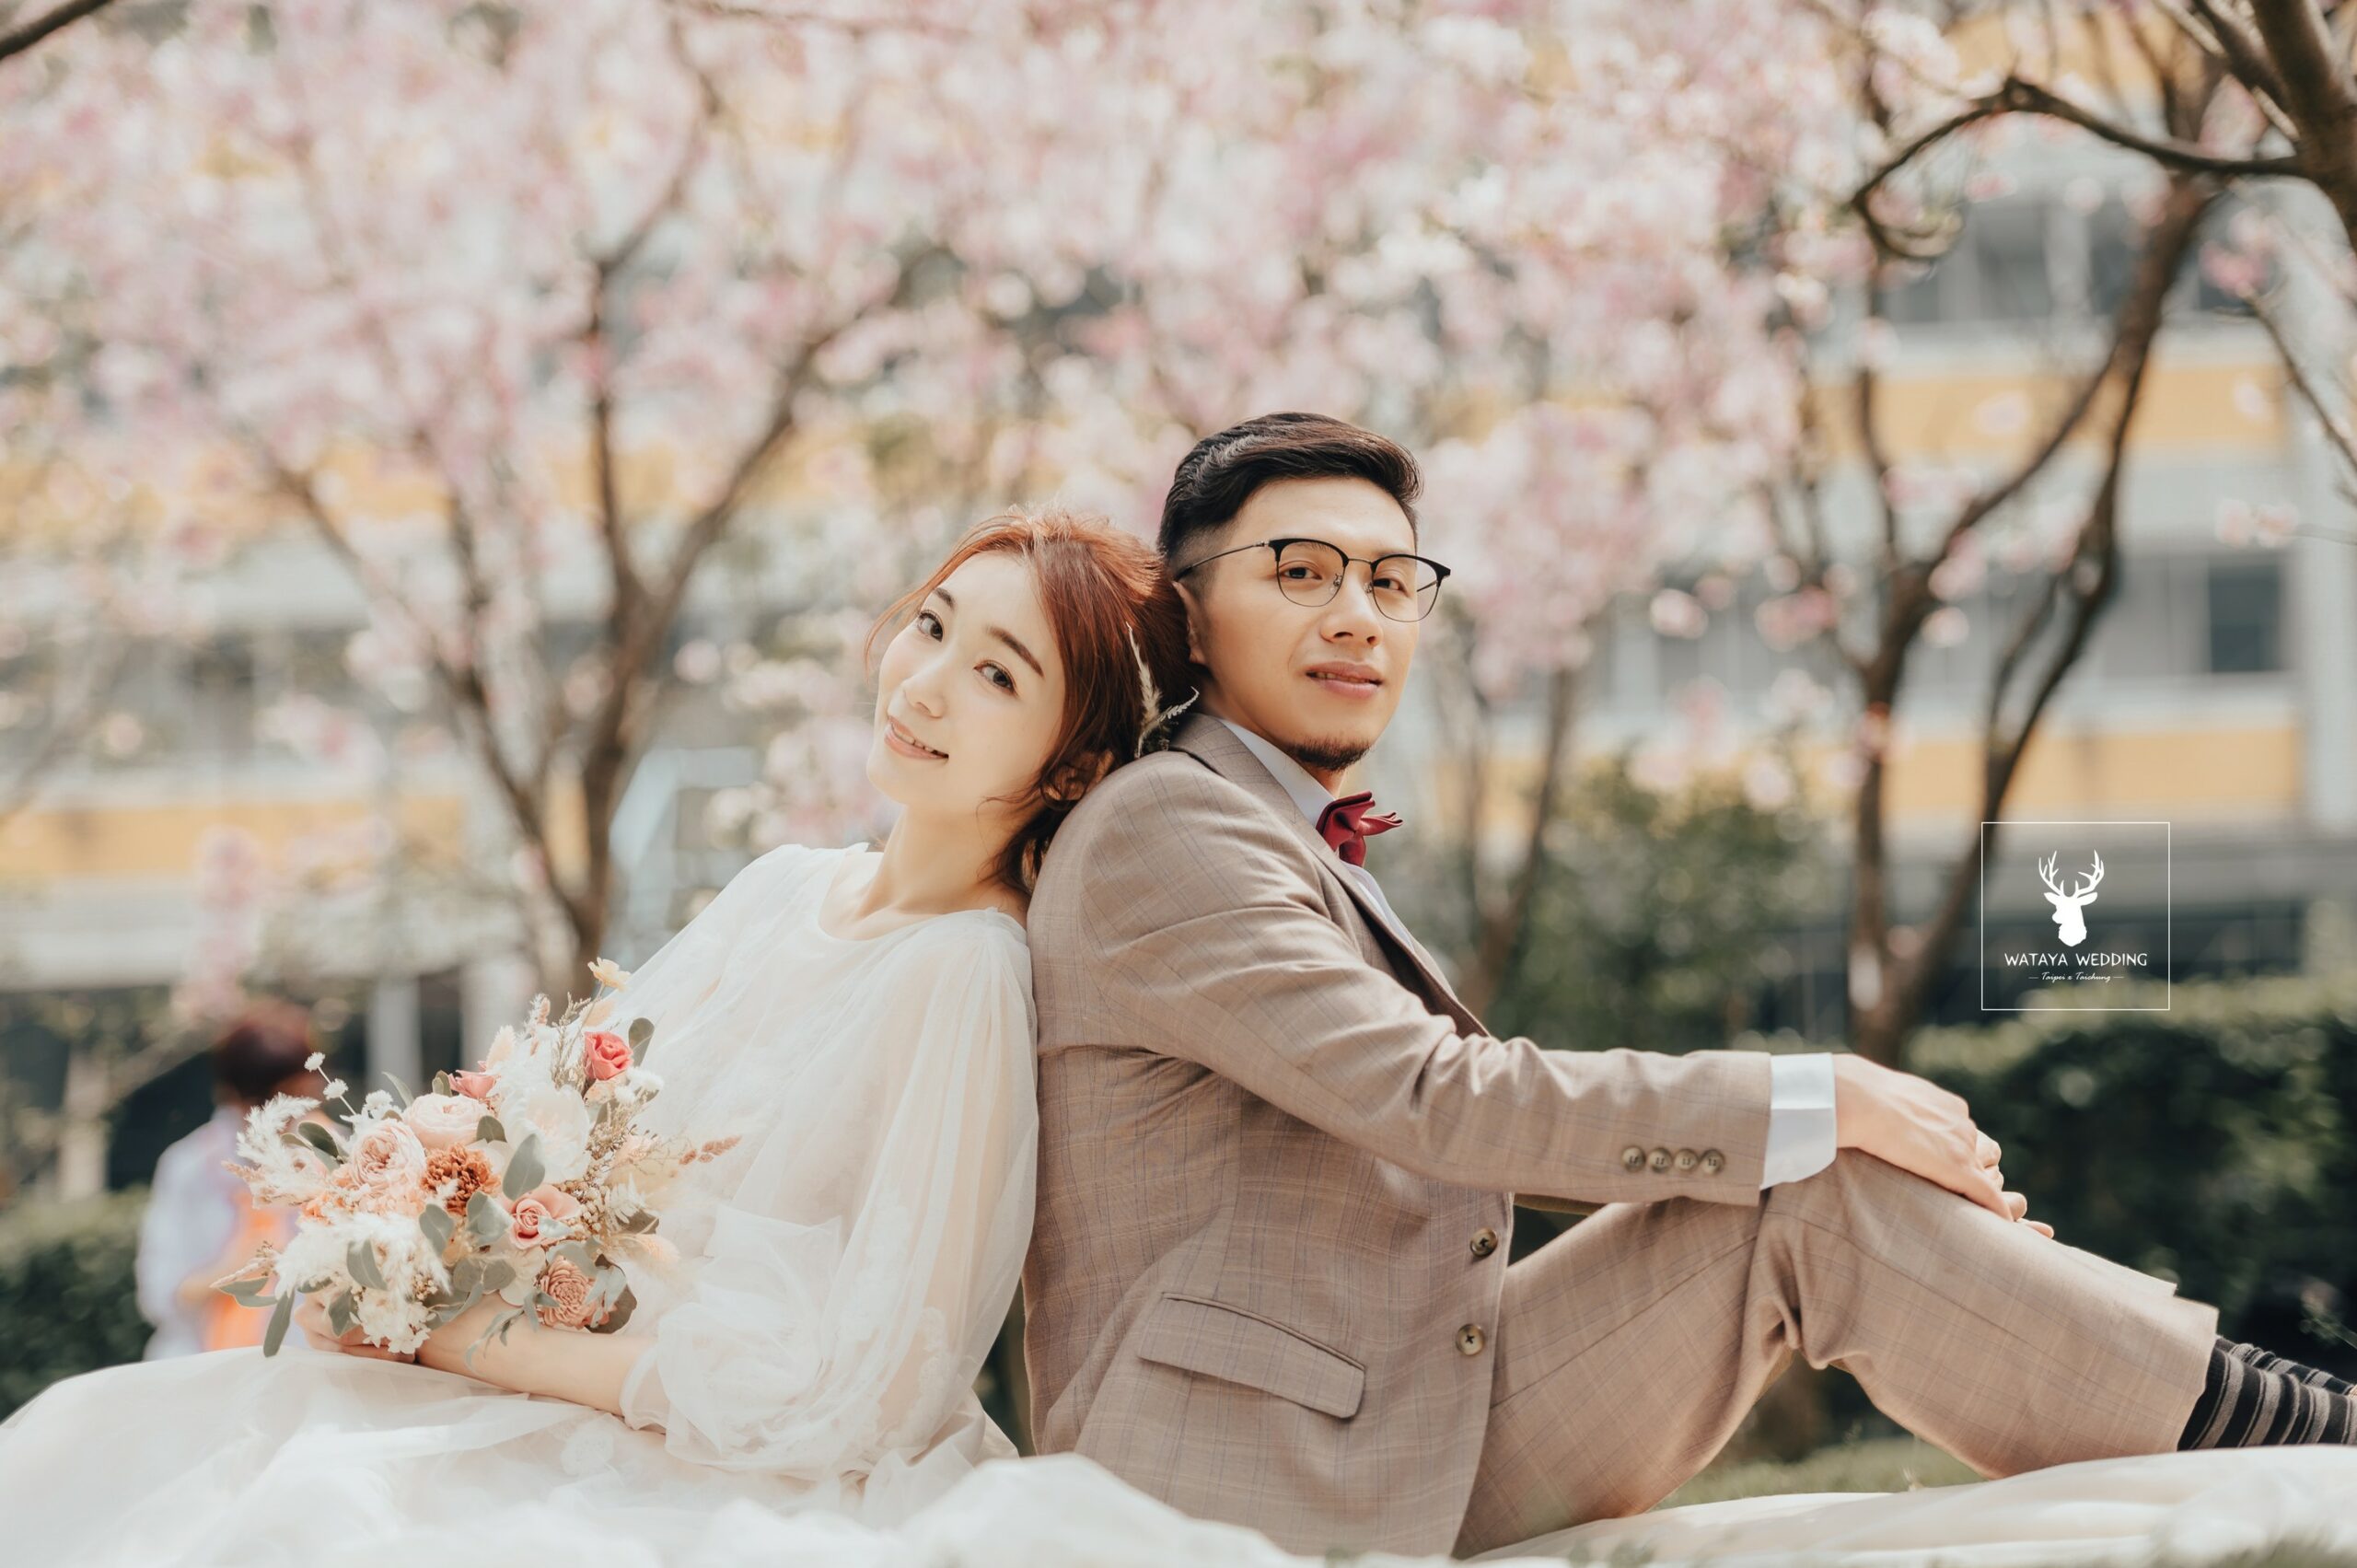 綿谷結婚式-婚紗攝影作品 (14)